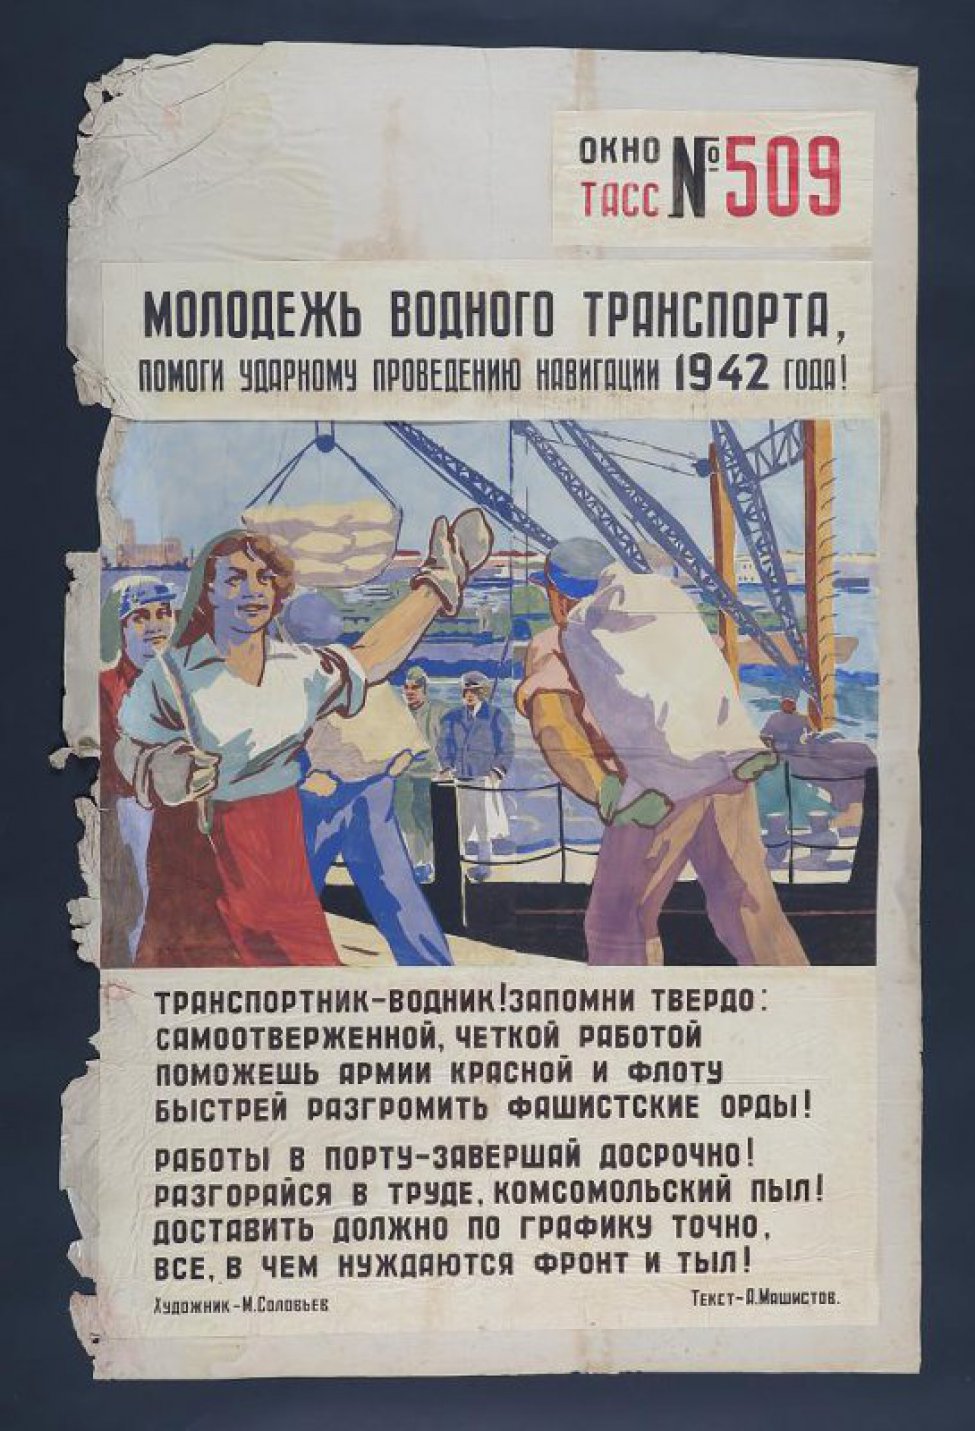 Изображены рабочие, работающие в порту, текст Машистова: " Транспортник- водник!  Запомни твердо, самоотверженной четкой работой  поможешь армии красной и флоту и т.д..."